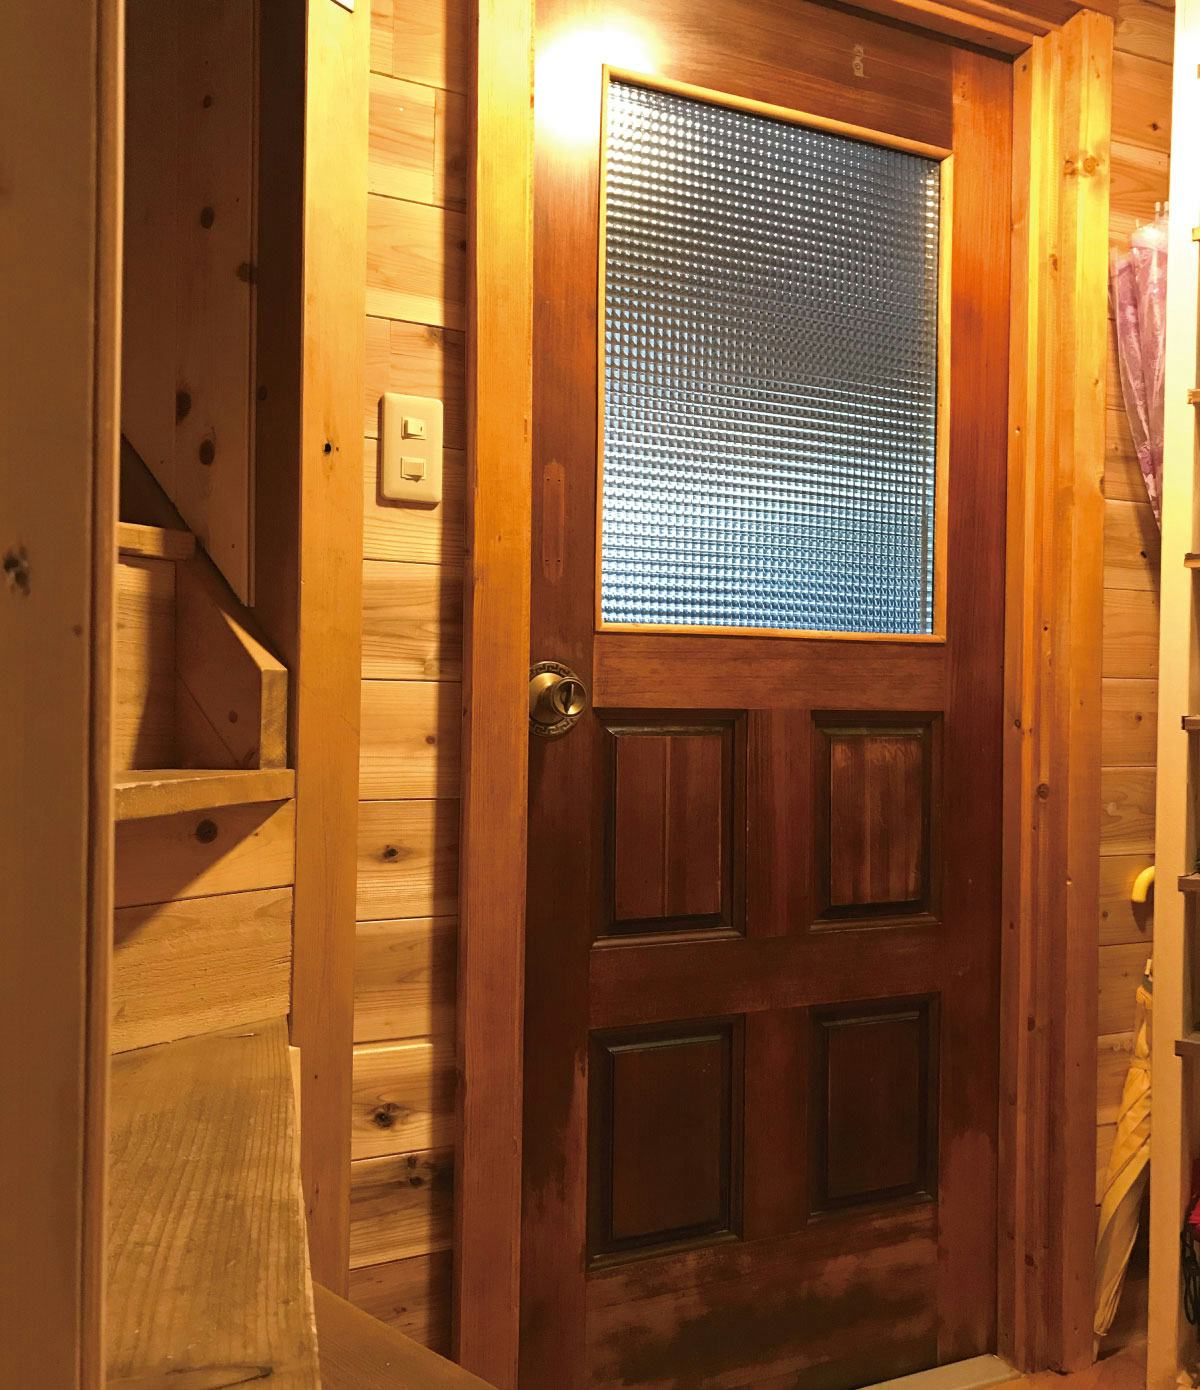 「デザートペア チェッカーガラス」を使用したドア窓のお写真